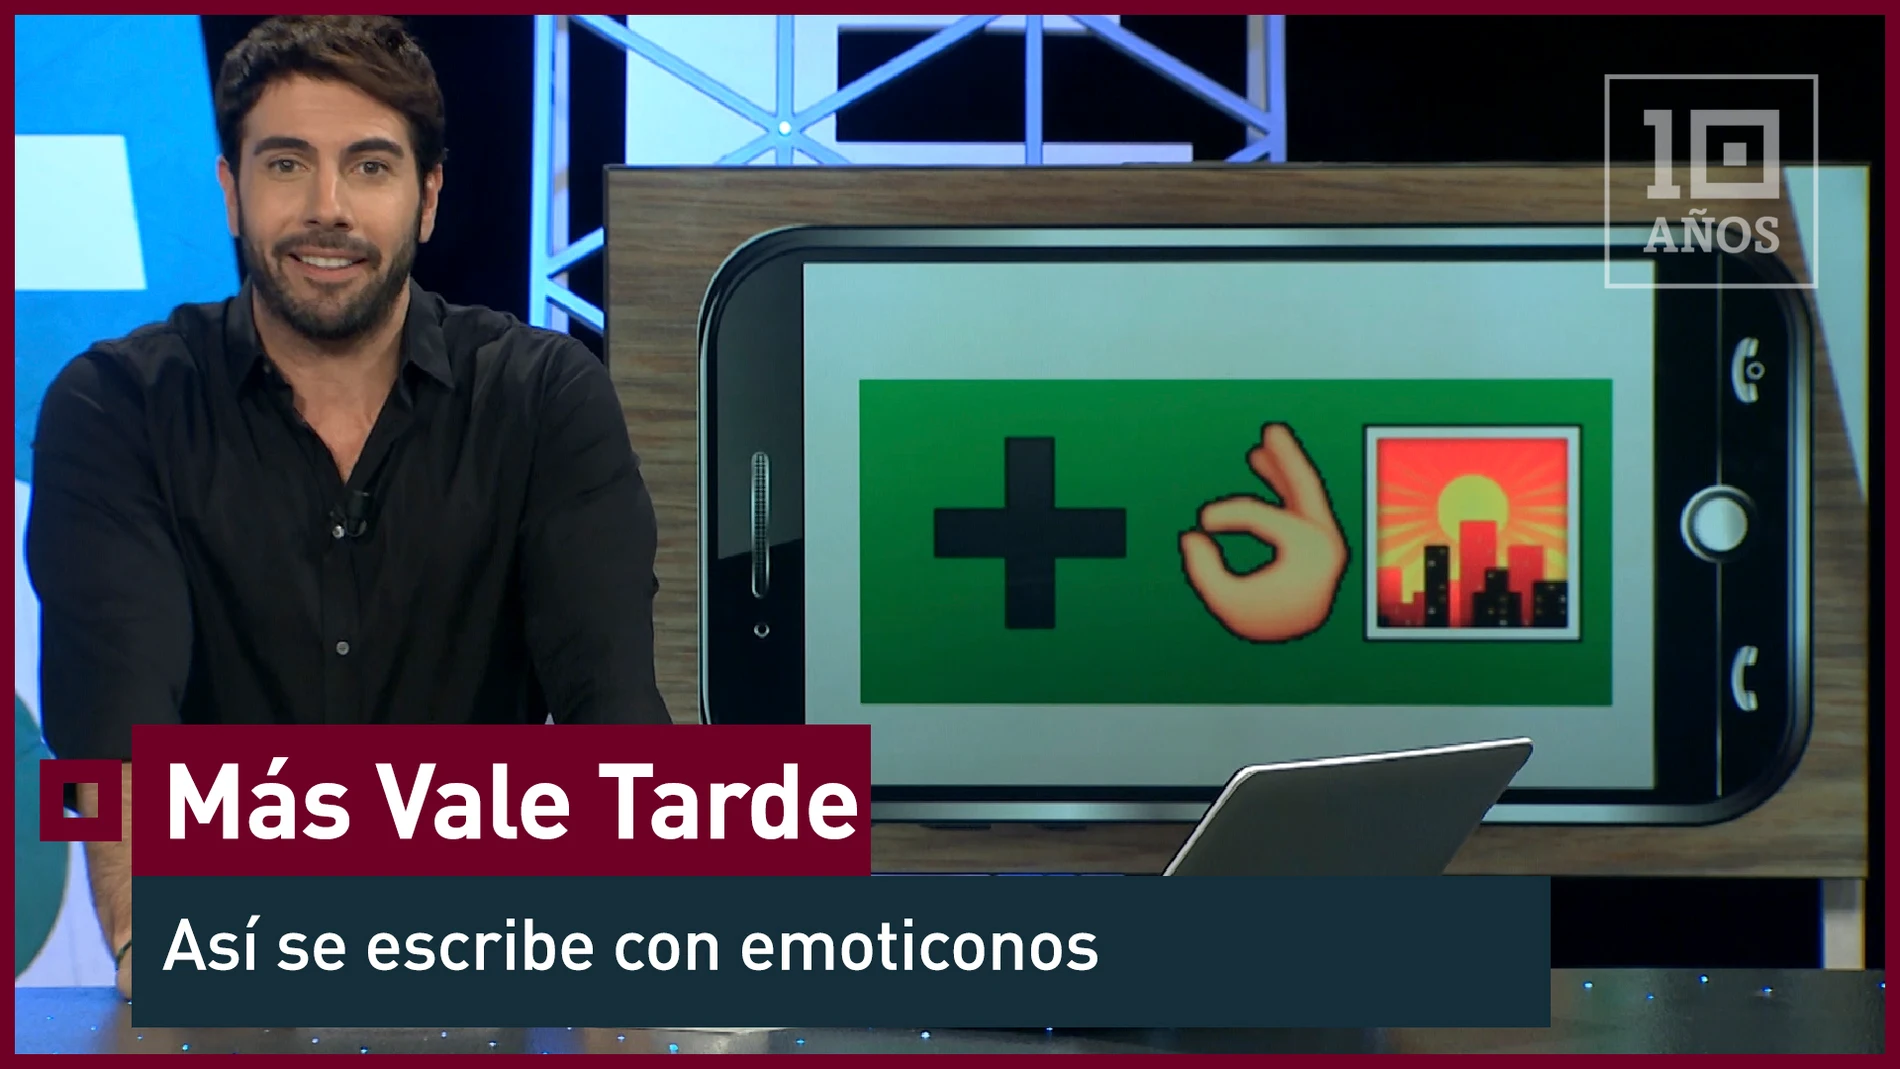 2015. ¿Cómo se dice 'Más vale tarde' en lenguaje emoji?